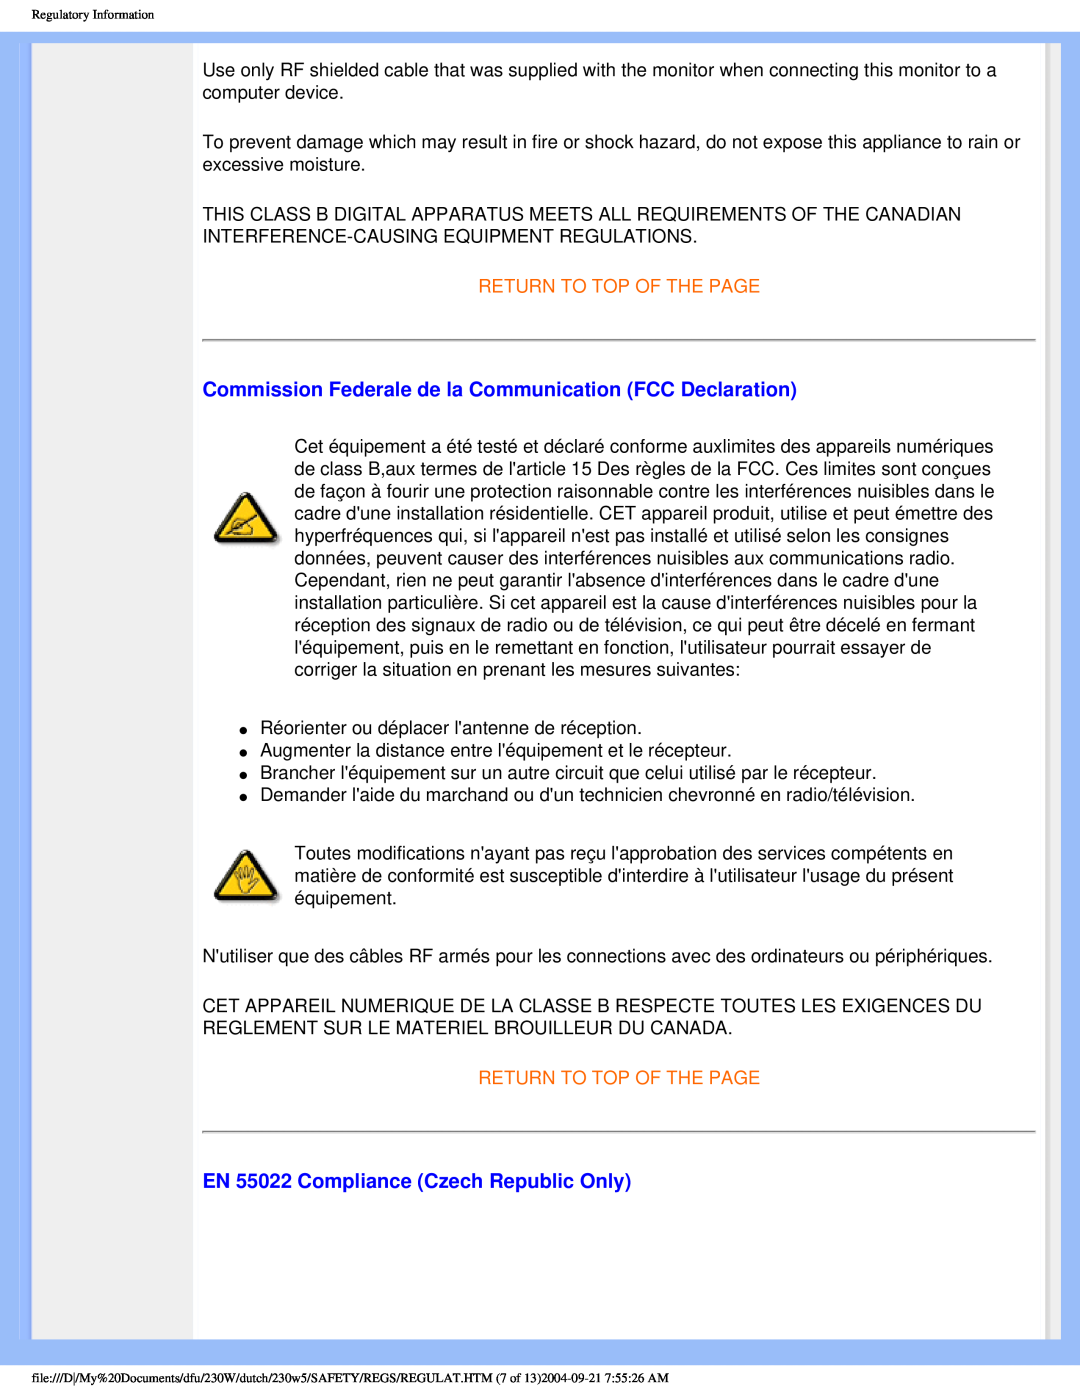 Philips 230W user manual Commission Federale de la Communication FCC Declaration, EN 55022 Compliance Czech Republic Only 